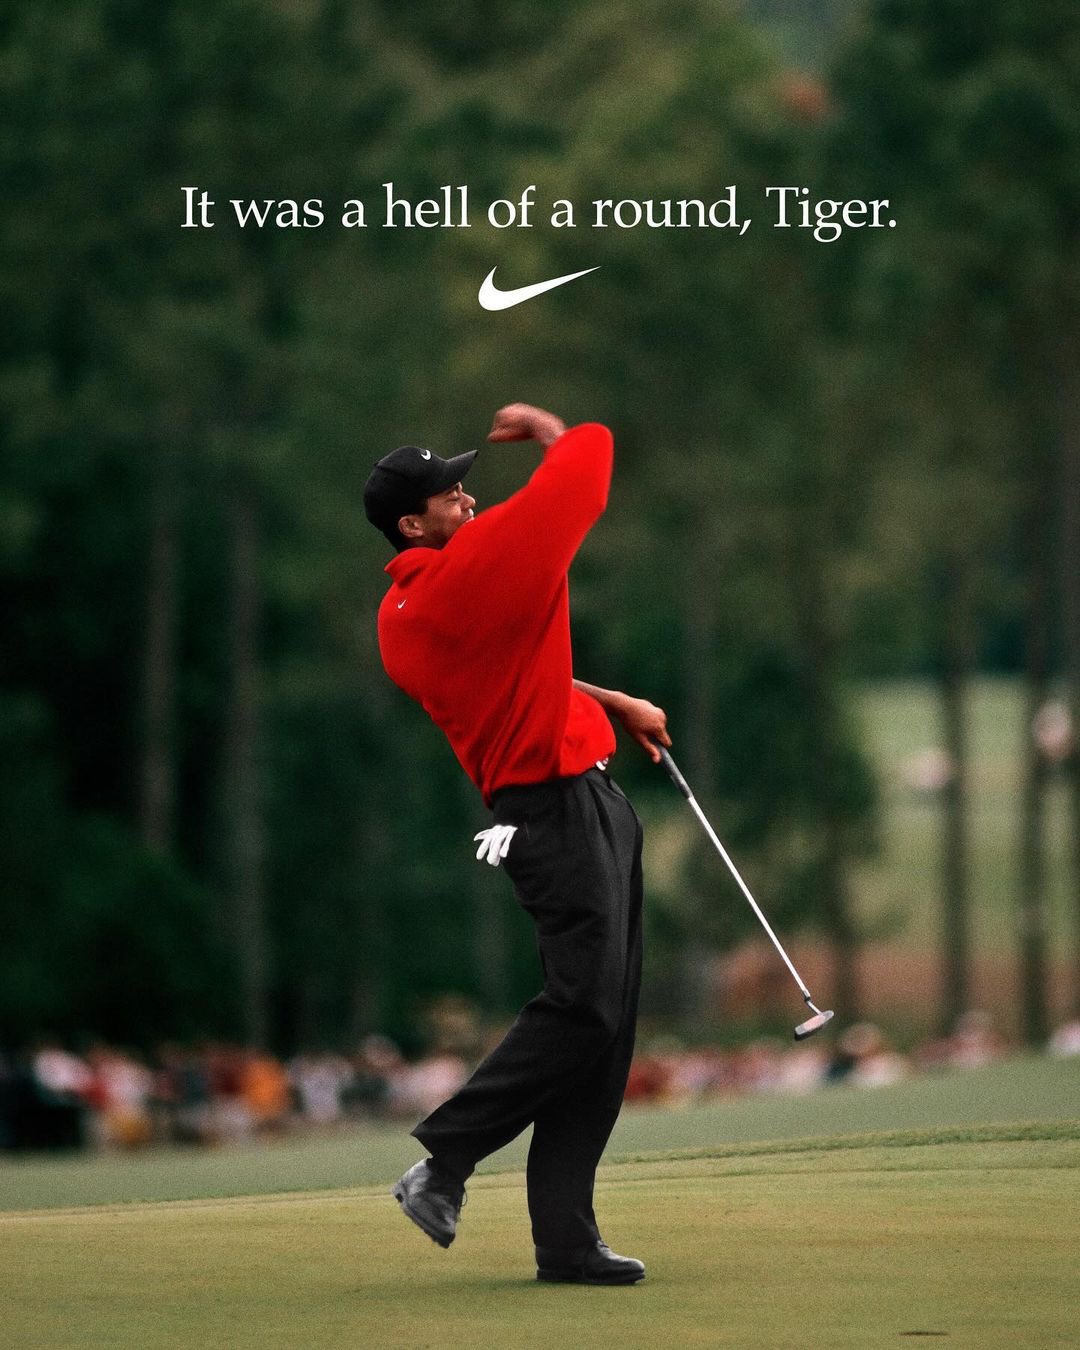 Tiger Woods ngừng hợp tác với thương hiệu Nike - Ảnh 1.